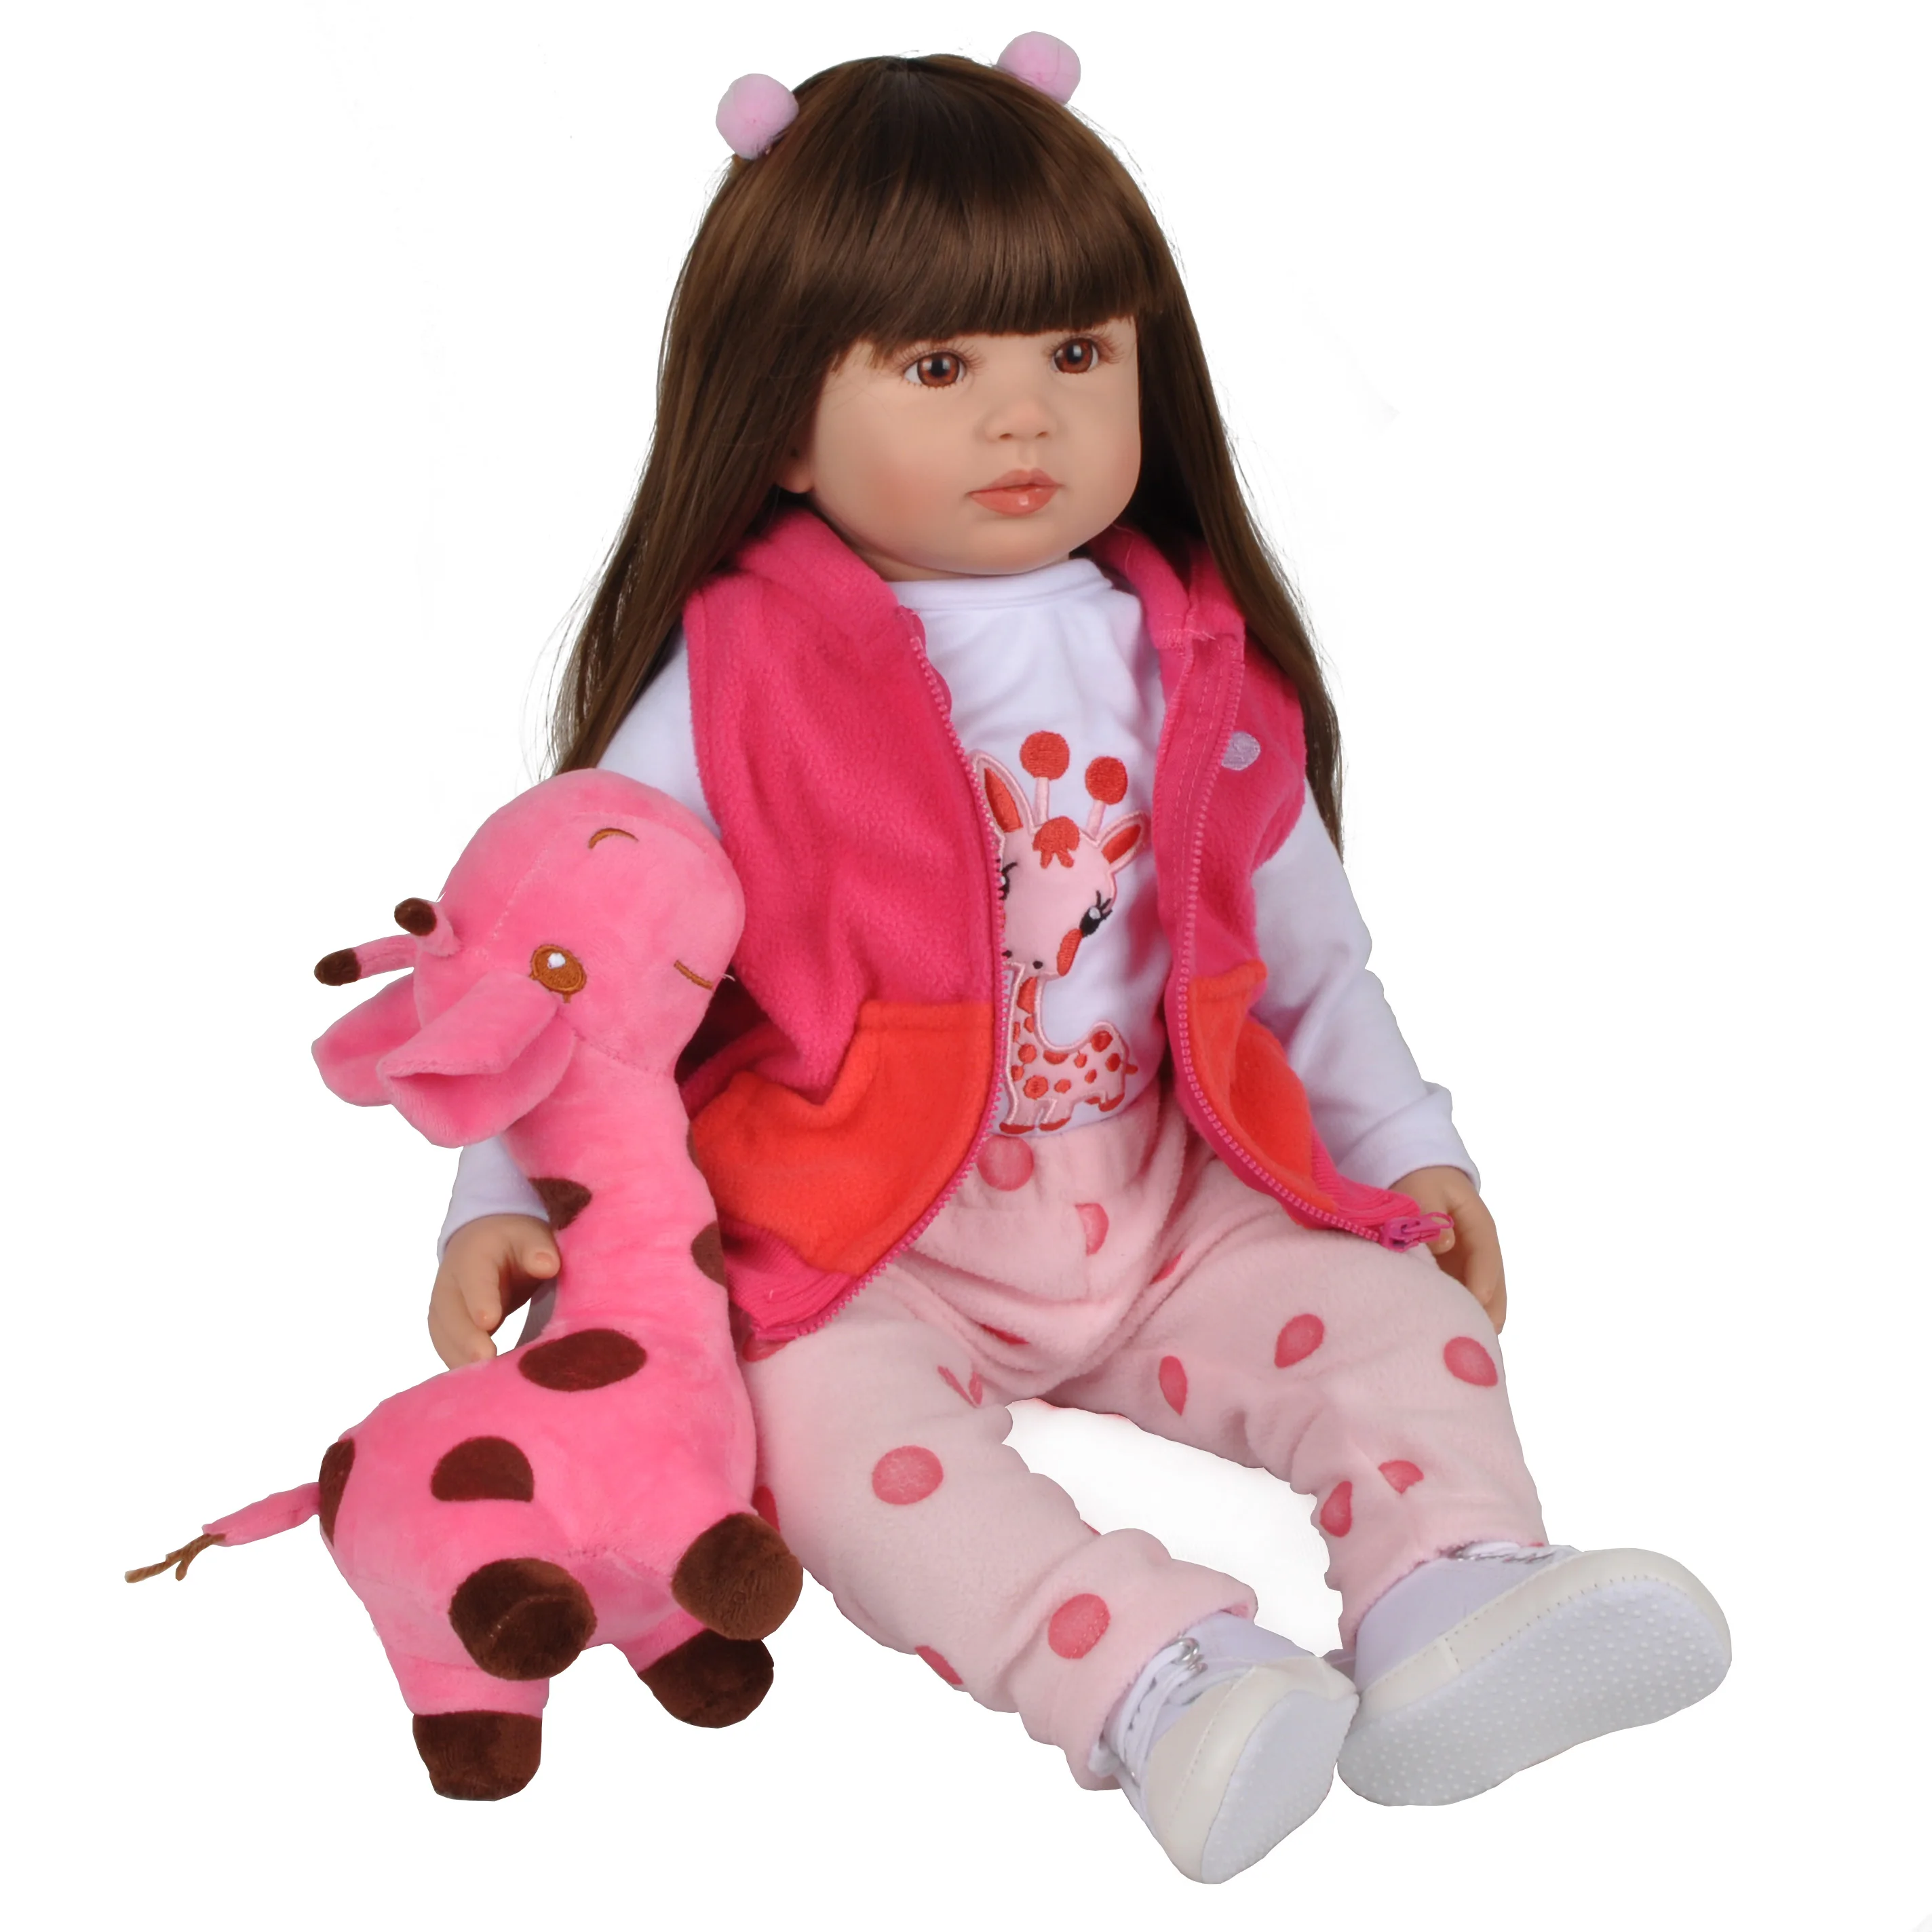 24 дюйма 60 см Reborn Baby Doll Силиконовые Bebe Bonecas Реалистичная кукла Menino Рождественский подарок игрушки длинные волосы принцесса